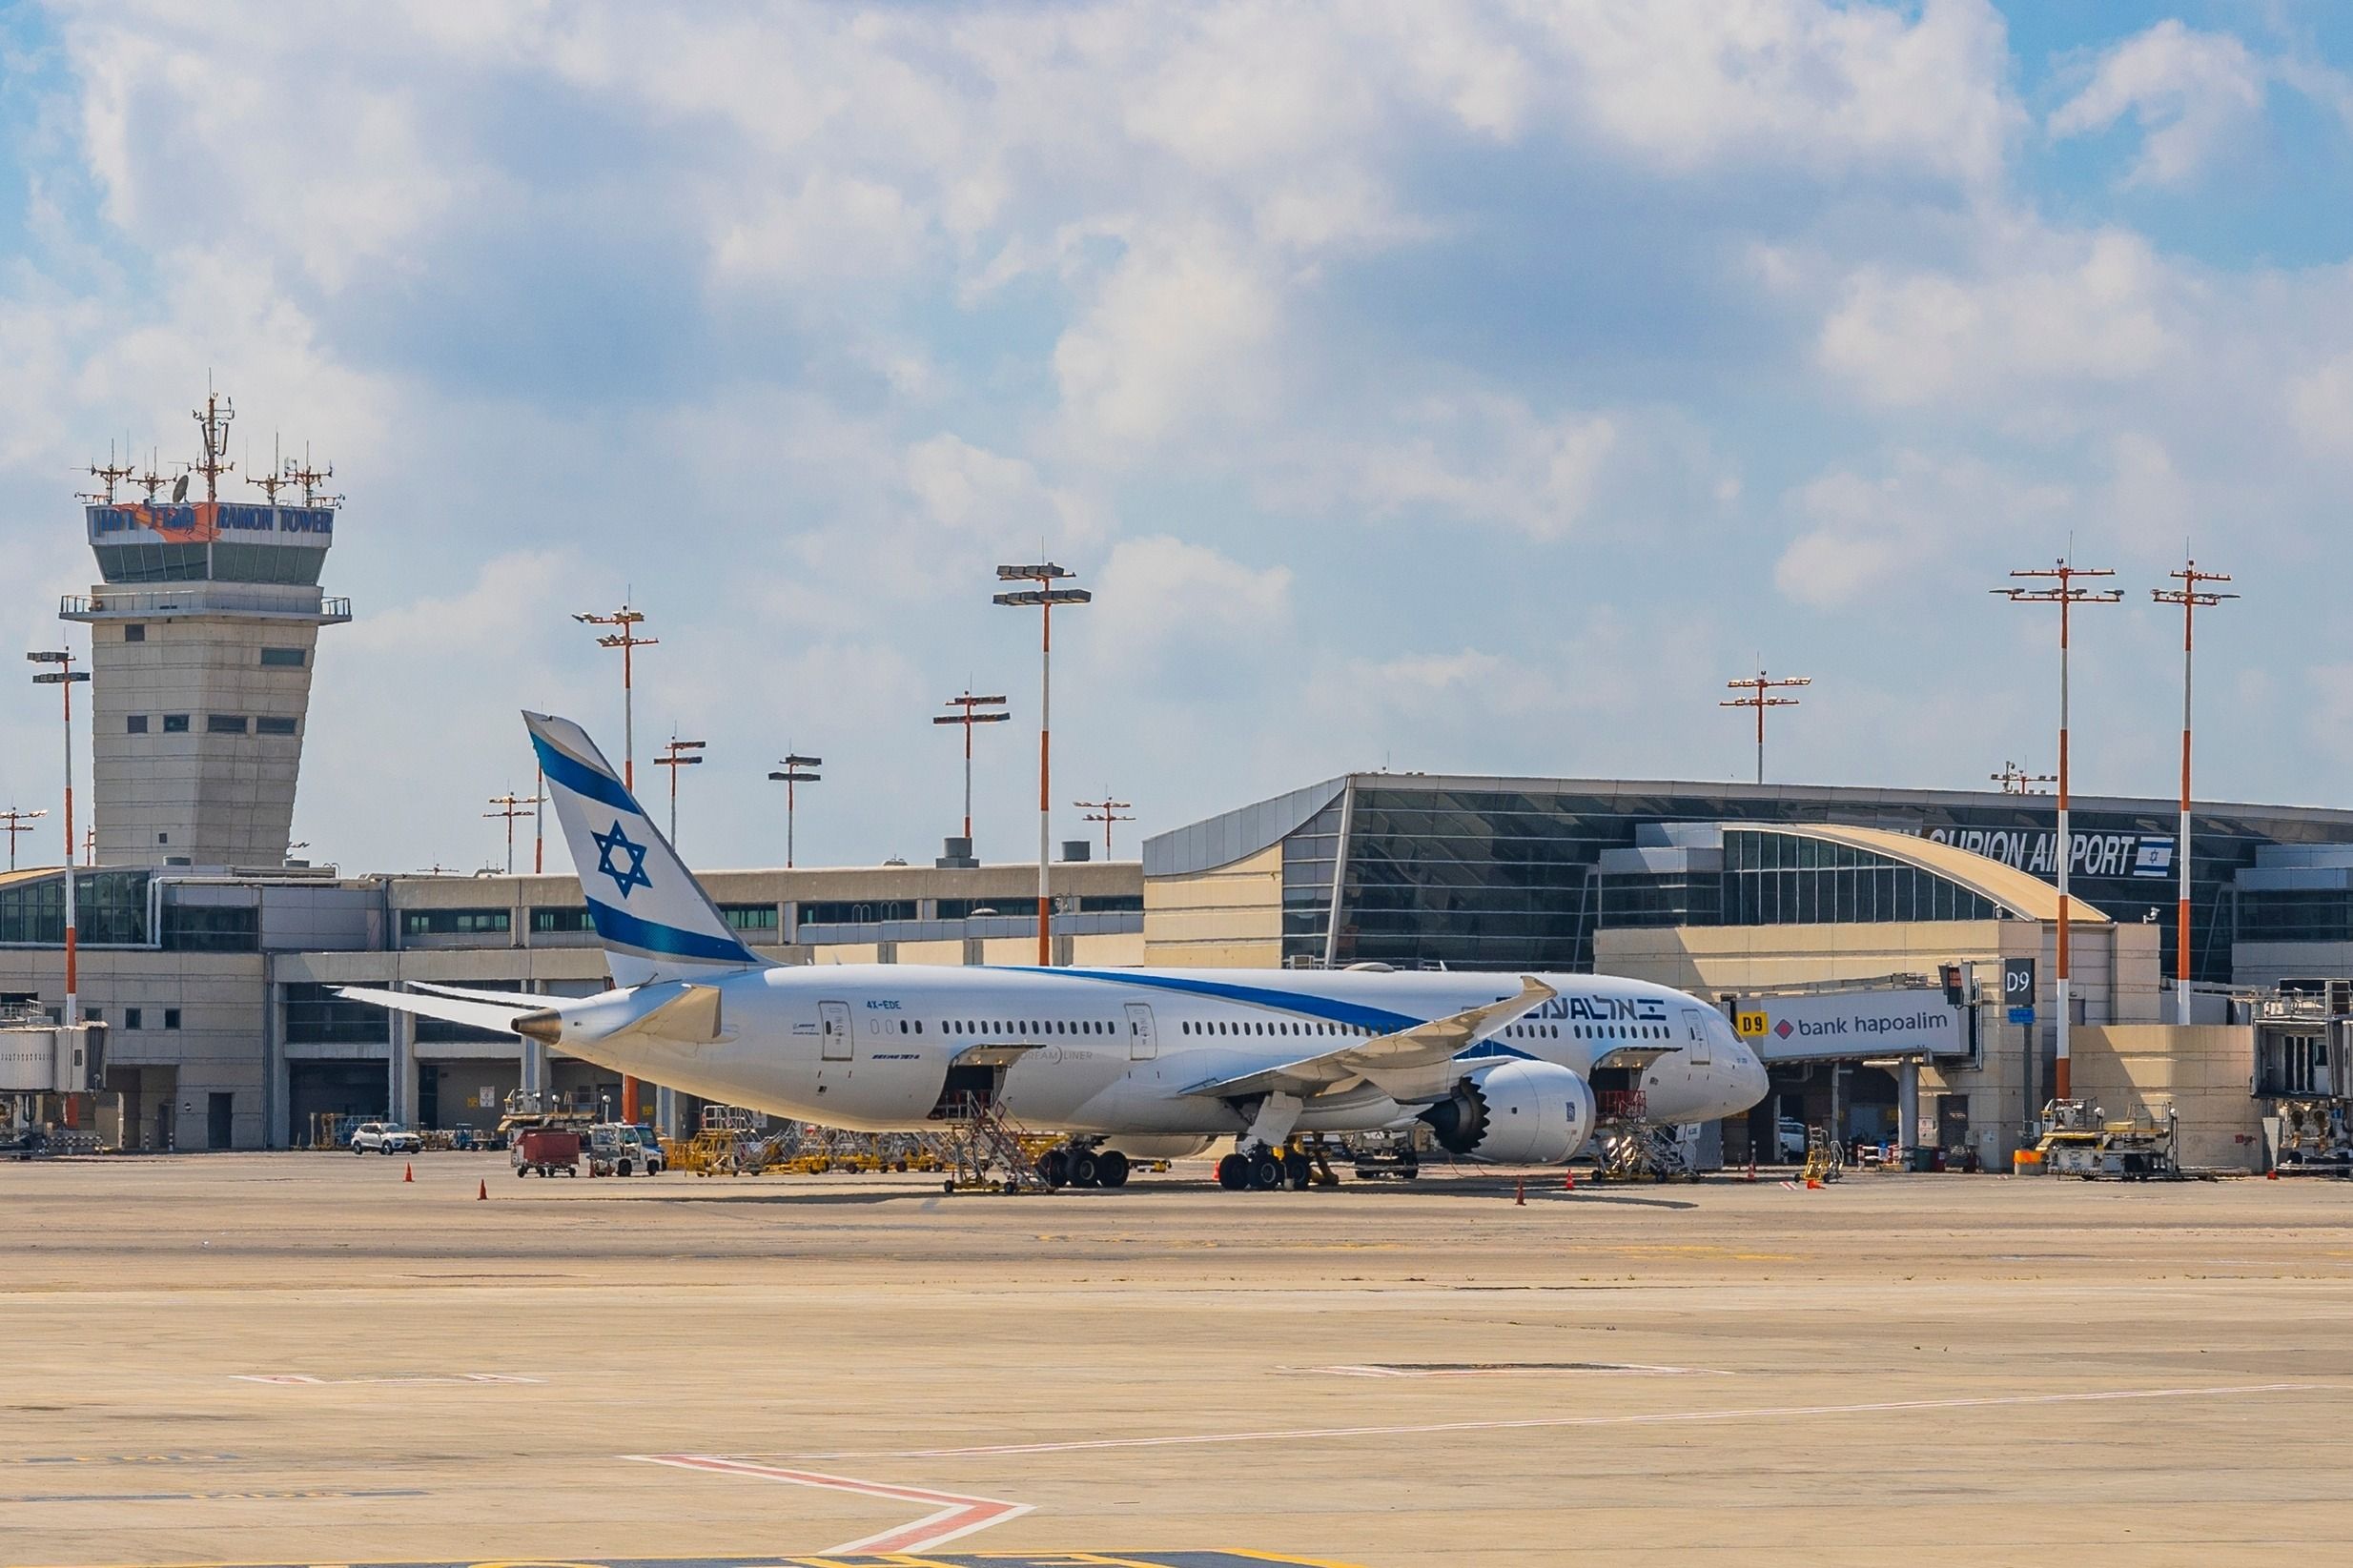 El Al Boeing 787-9 Dreamliner at Ben Gurion Airport.